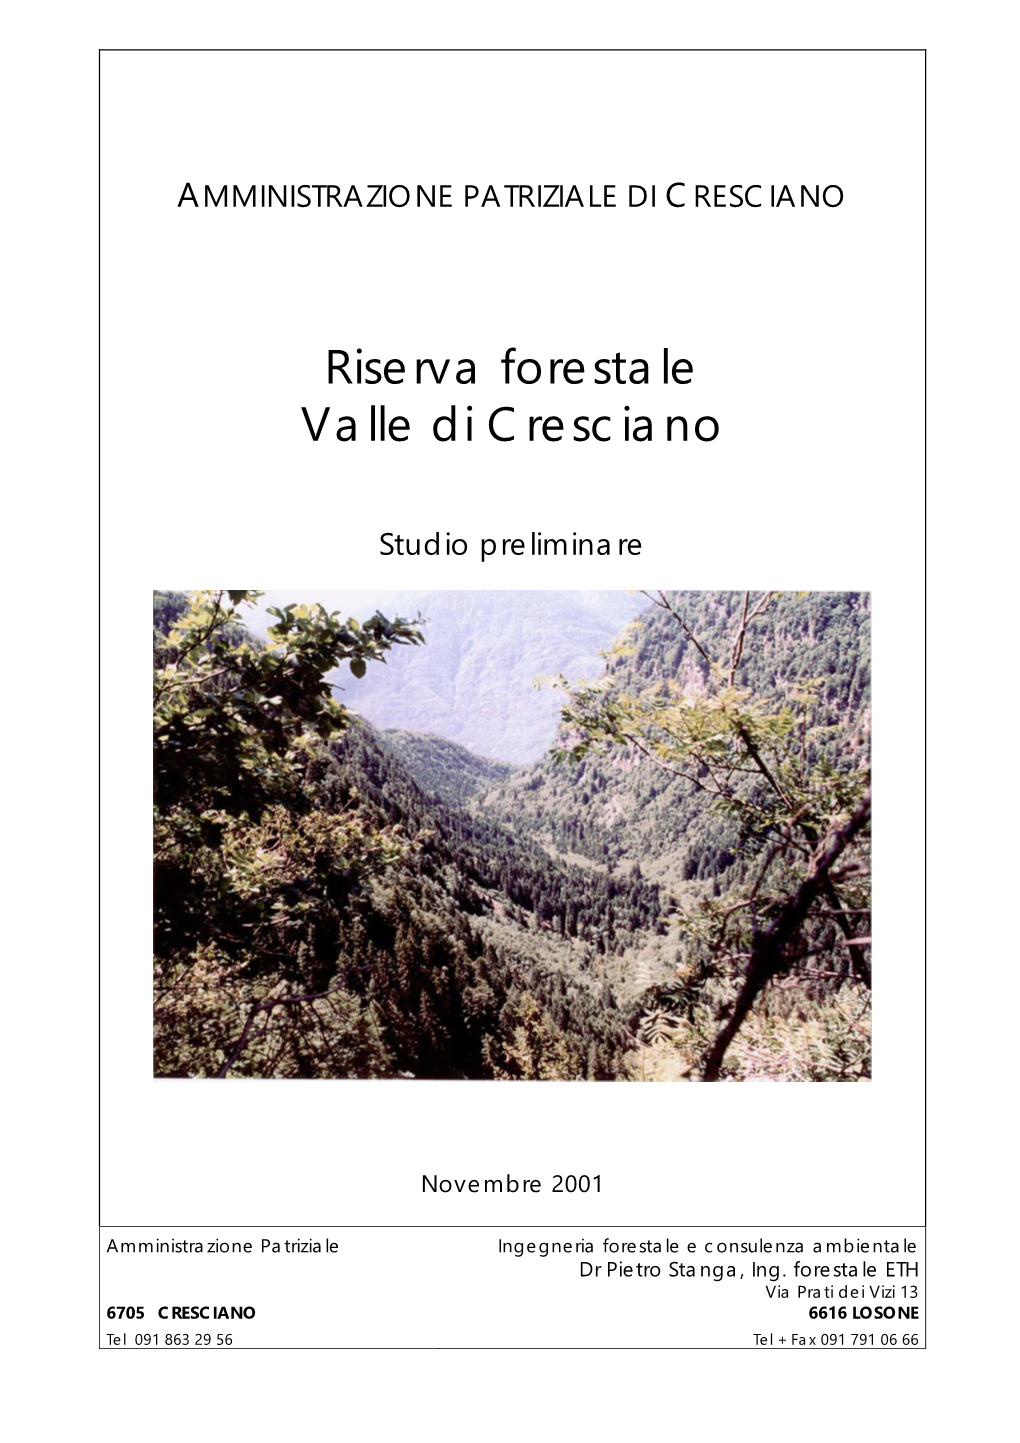 Riserva Forestale Valle Di Cresciano